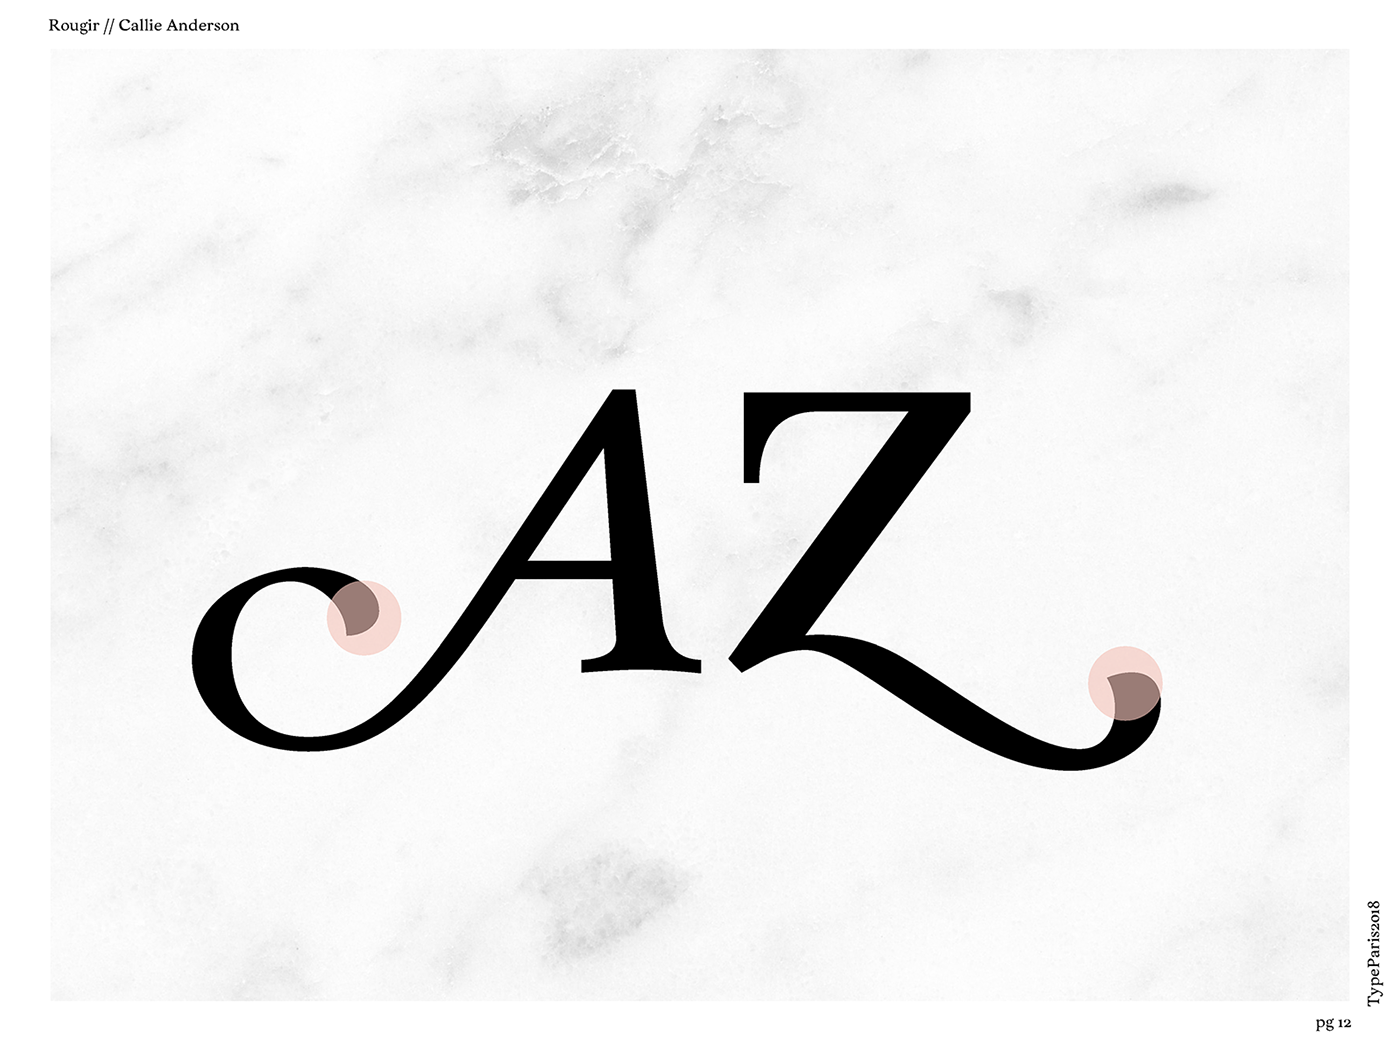 typeparis typeparis18 type design Typeface graphic design  callie anderson